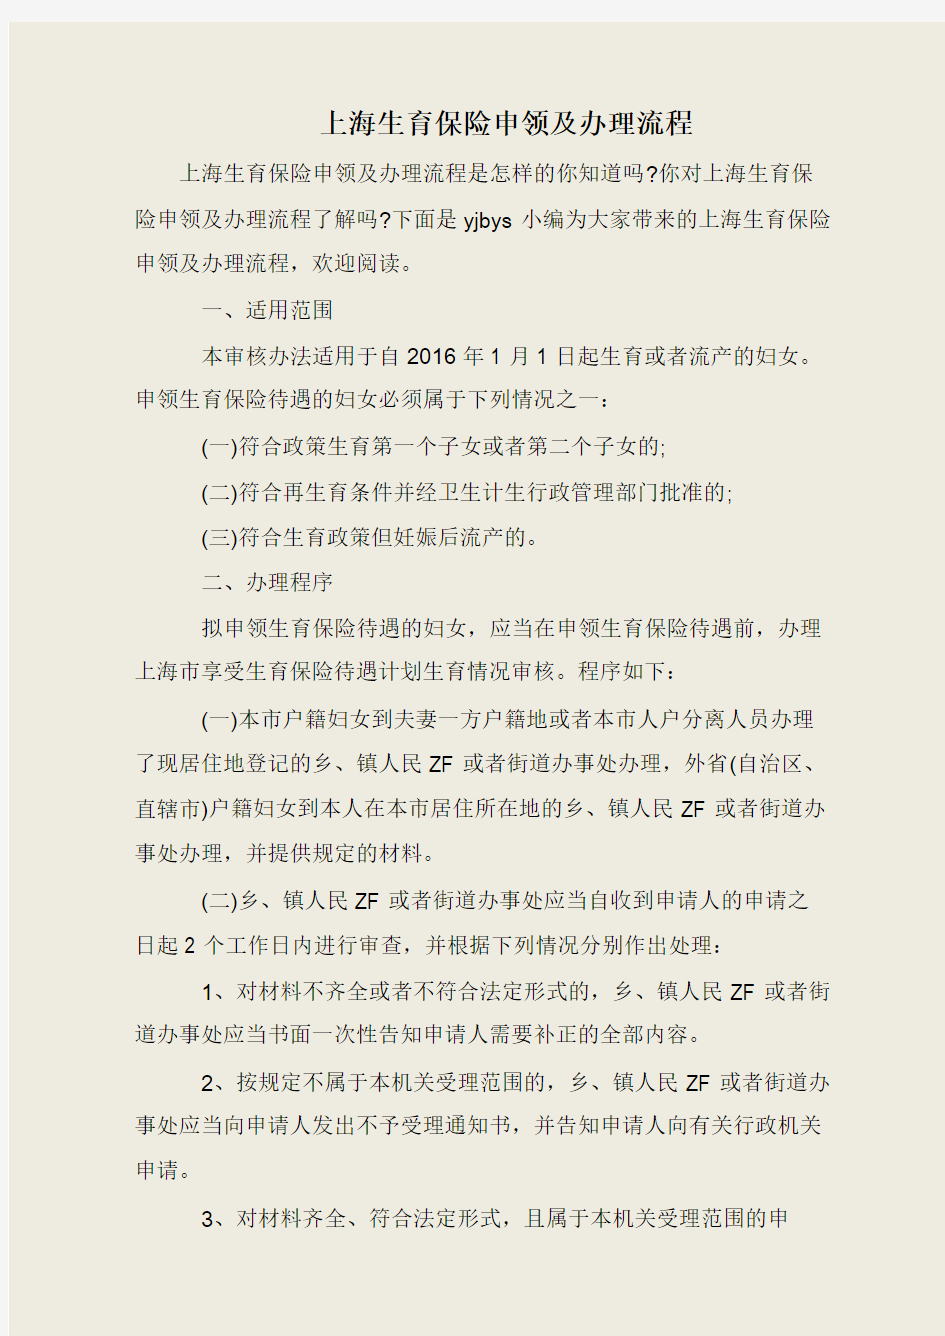 上海生育保险申领及办理流程